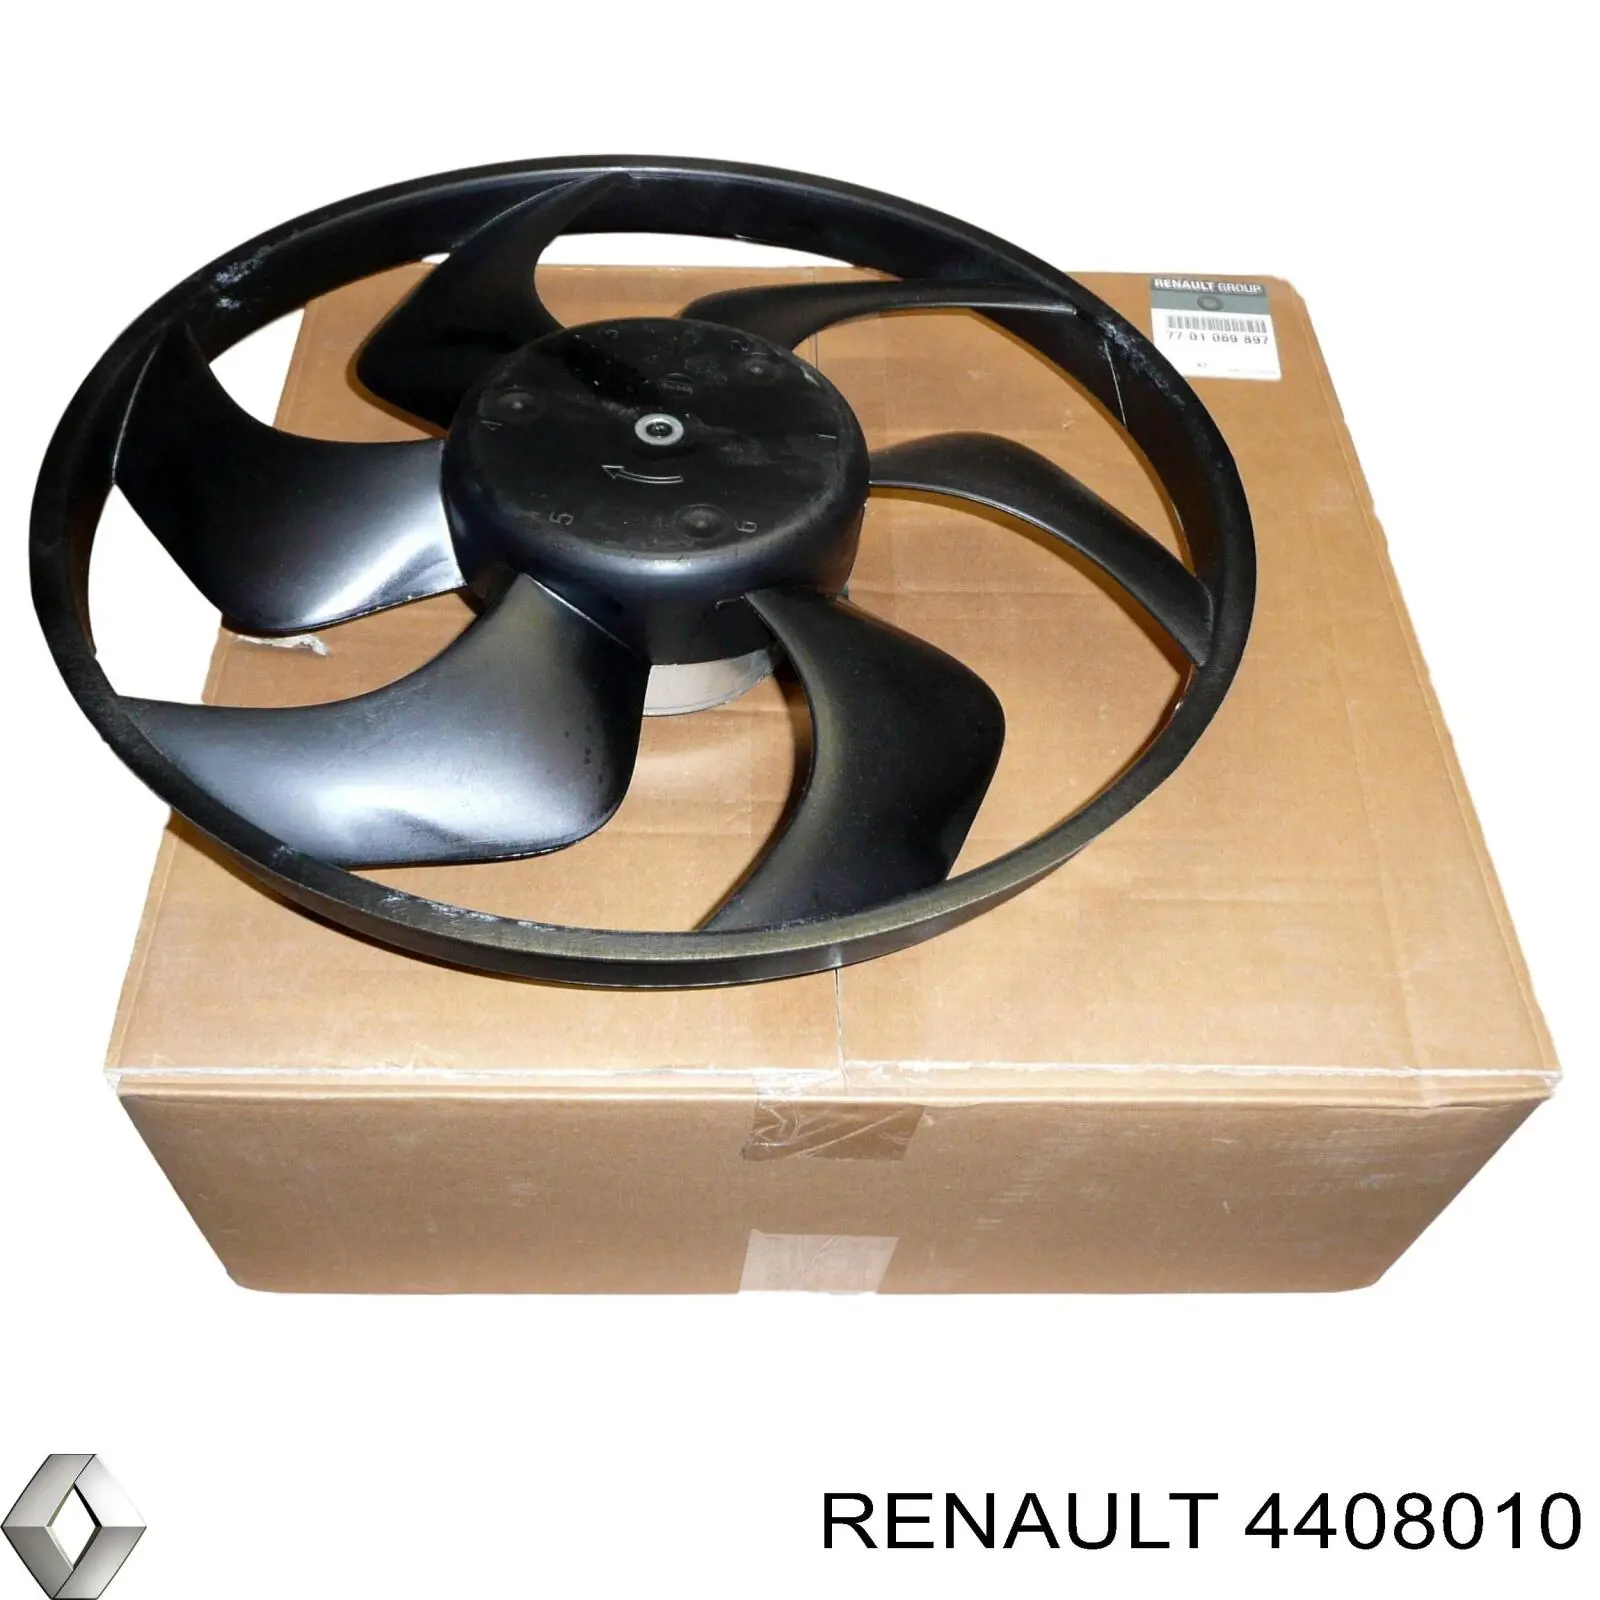 4408010 Renault (RVI) difusor de radiador, ventilador de refrigeración, condensador del aire acondicionado, completo con motor y rodete